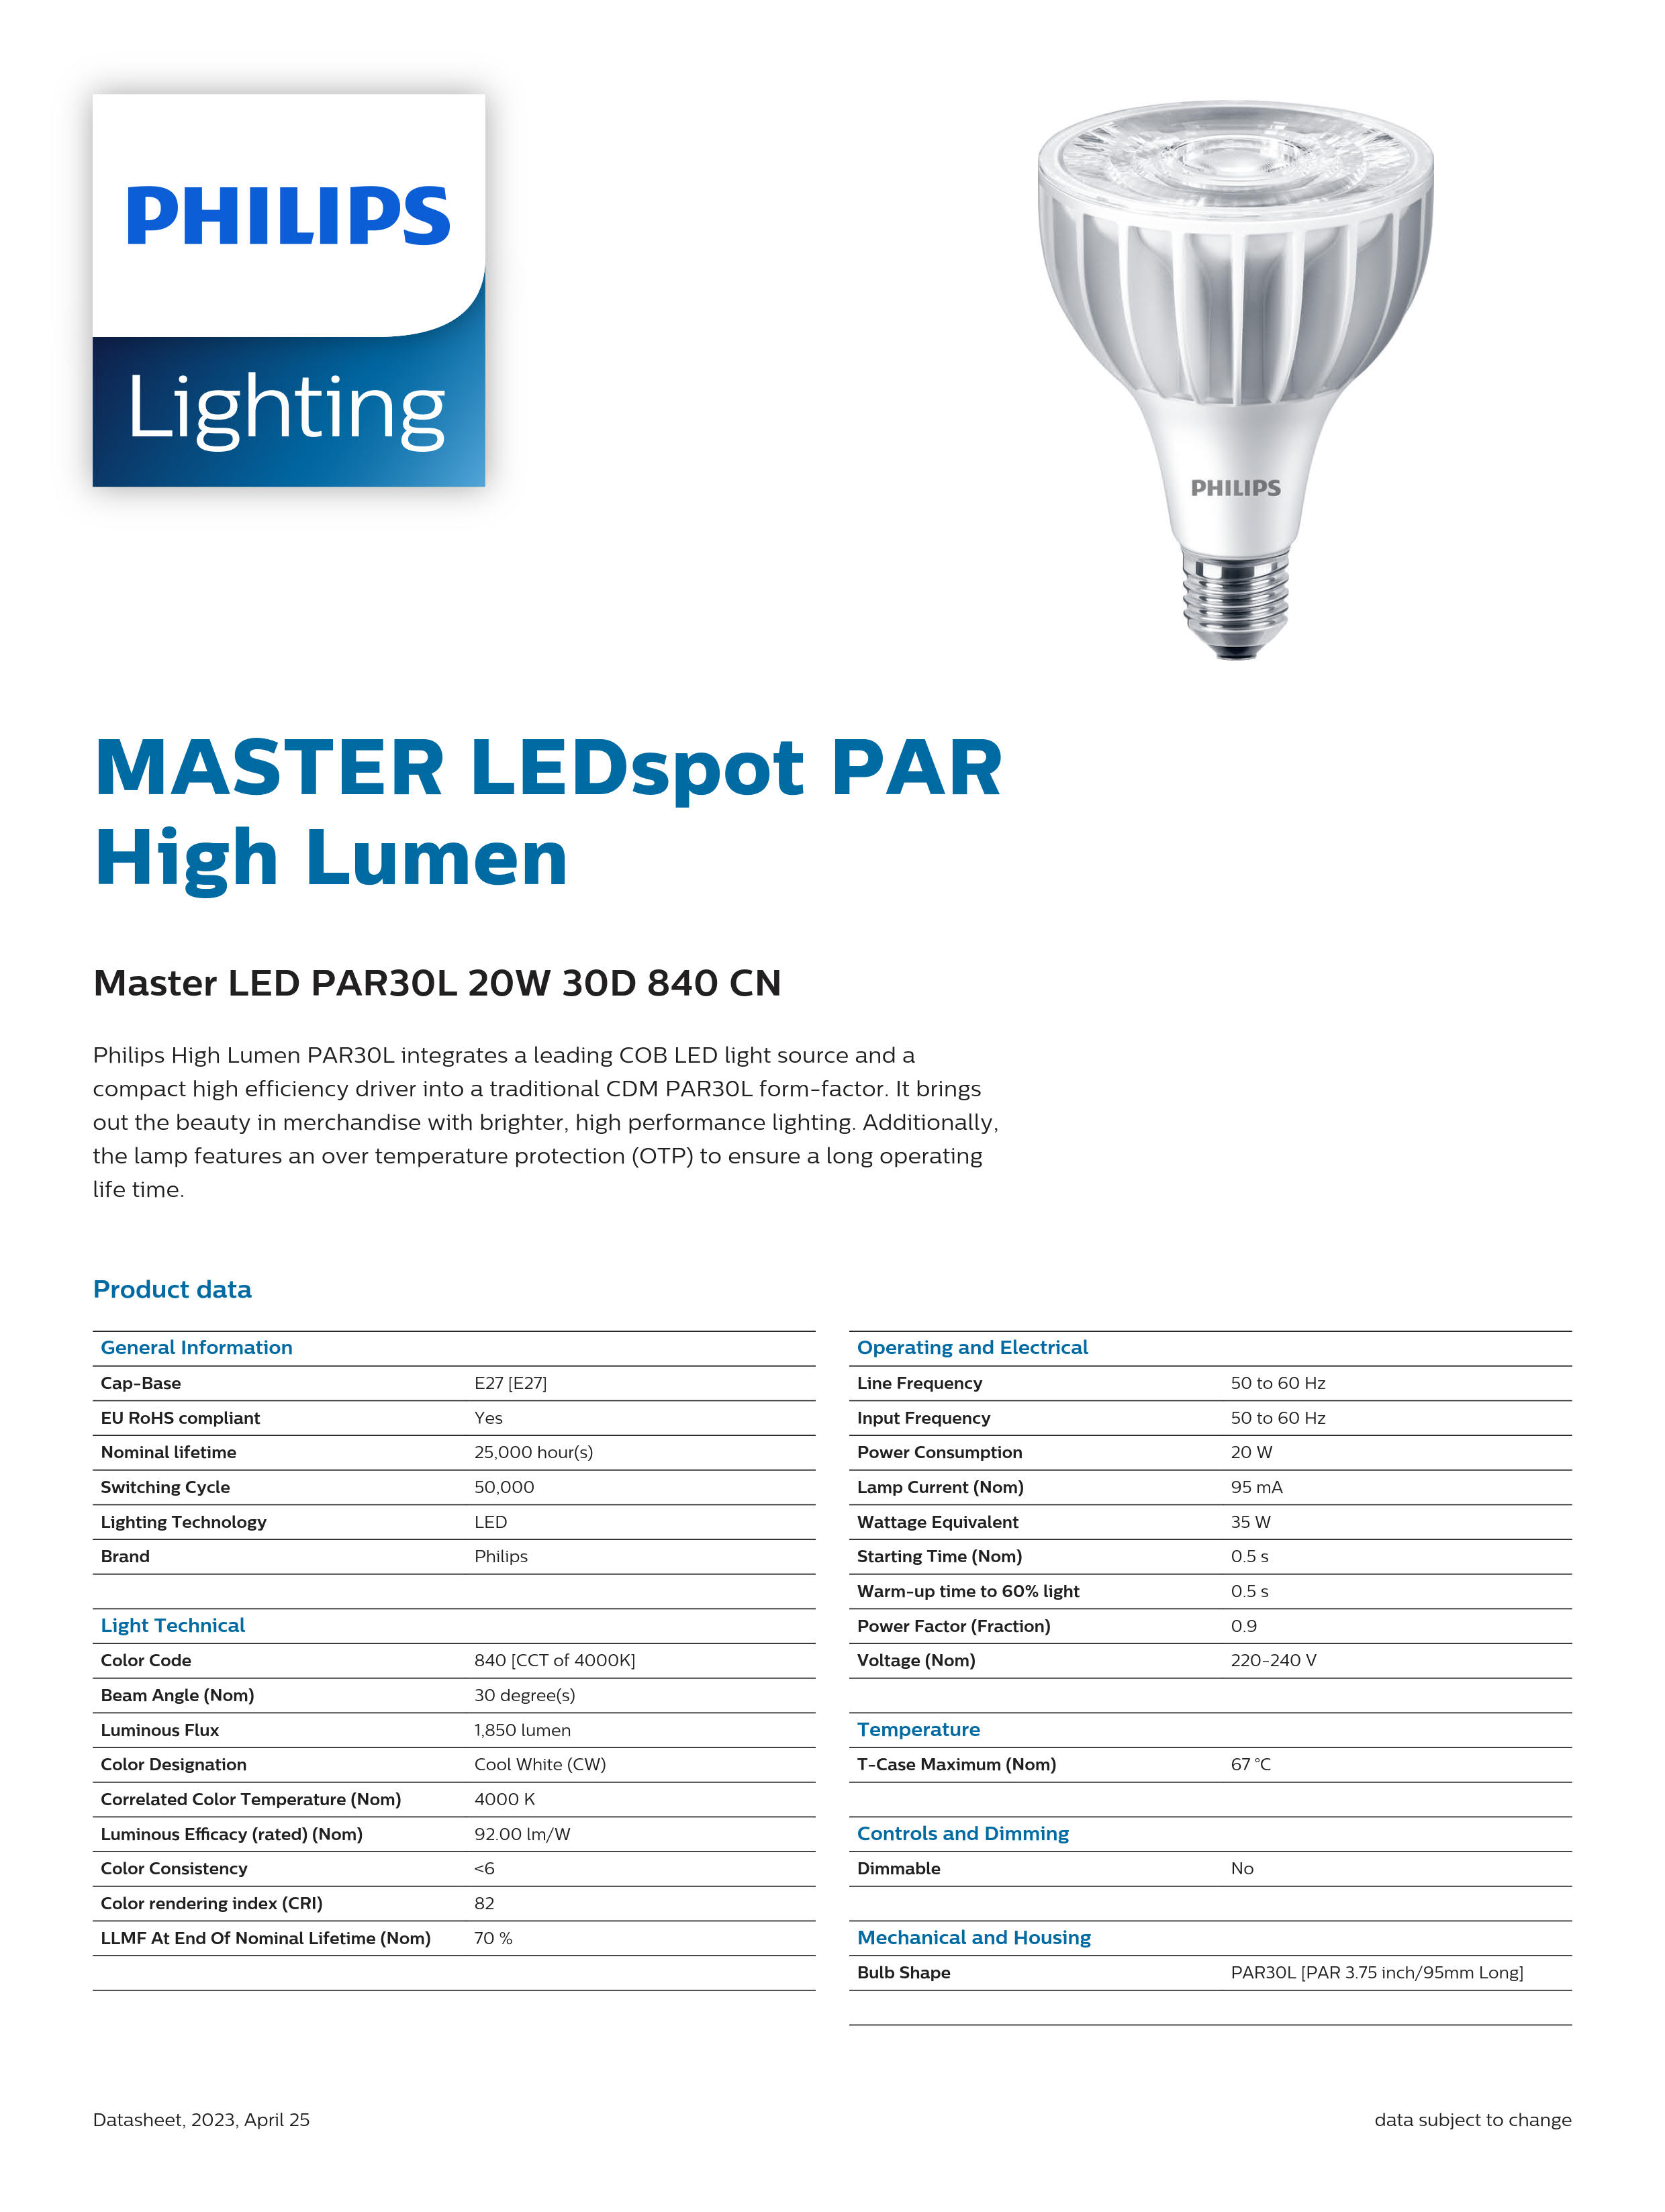 PHILIPS Master LED PAR30L 20W 30D 840 CN 929001354110